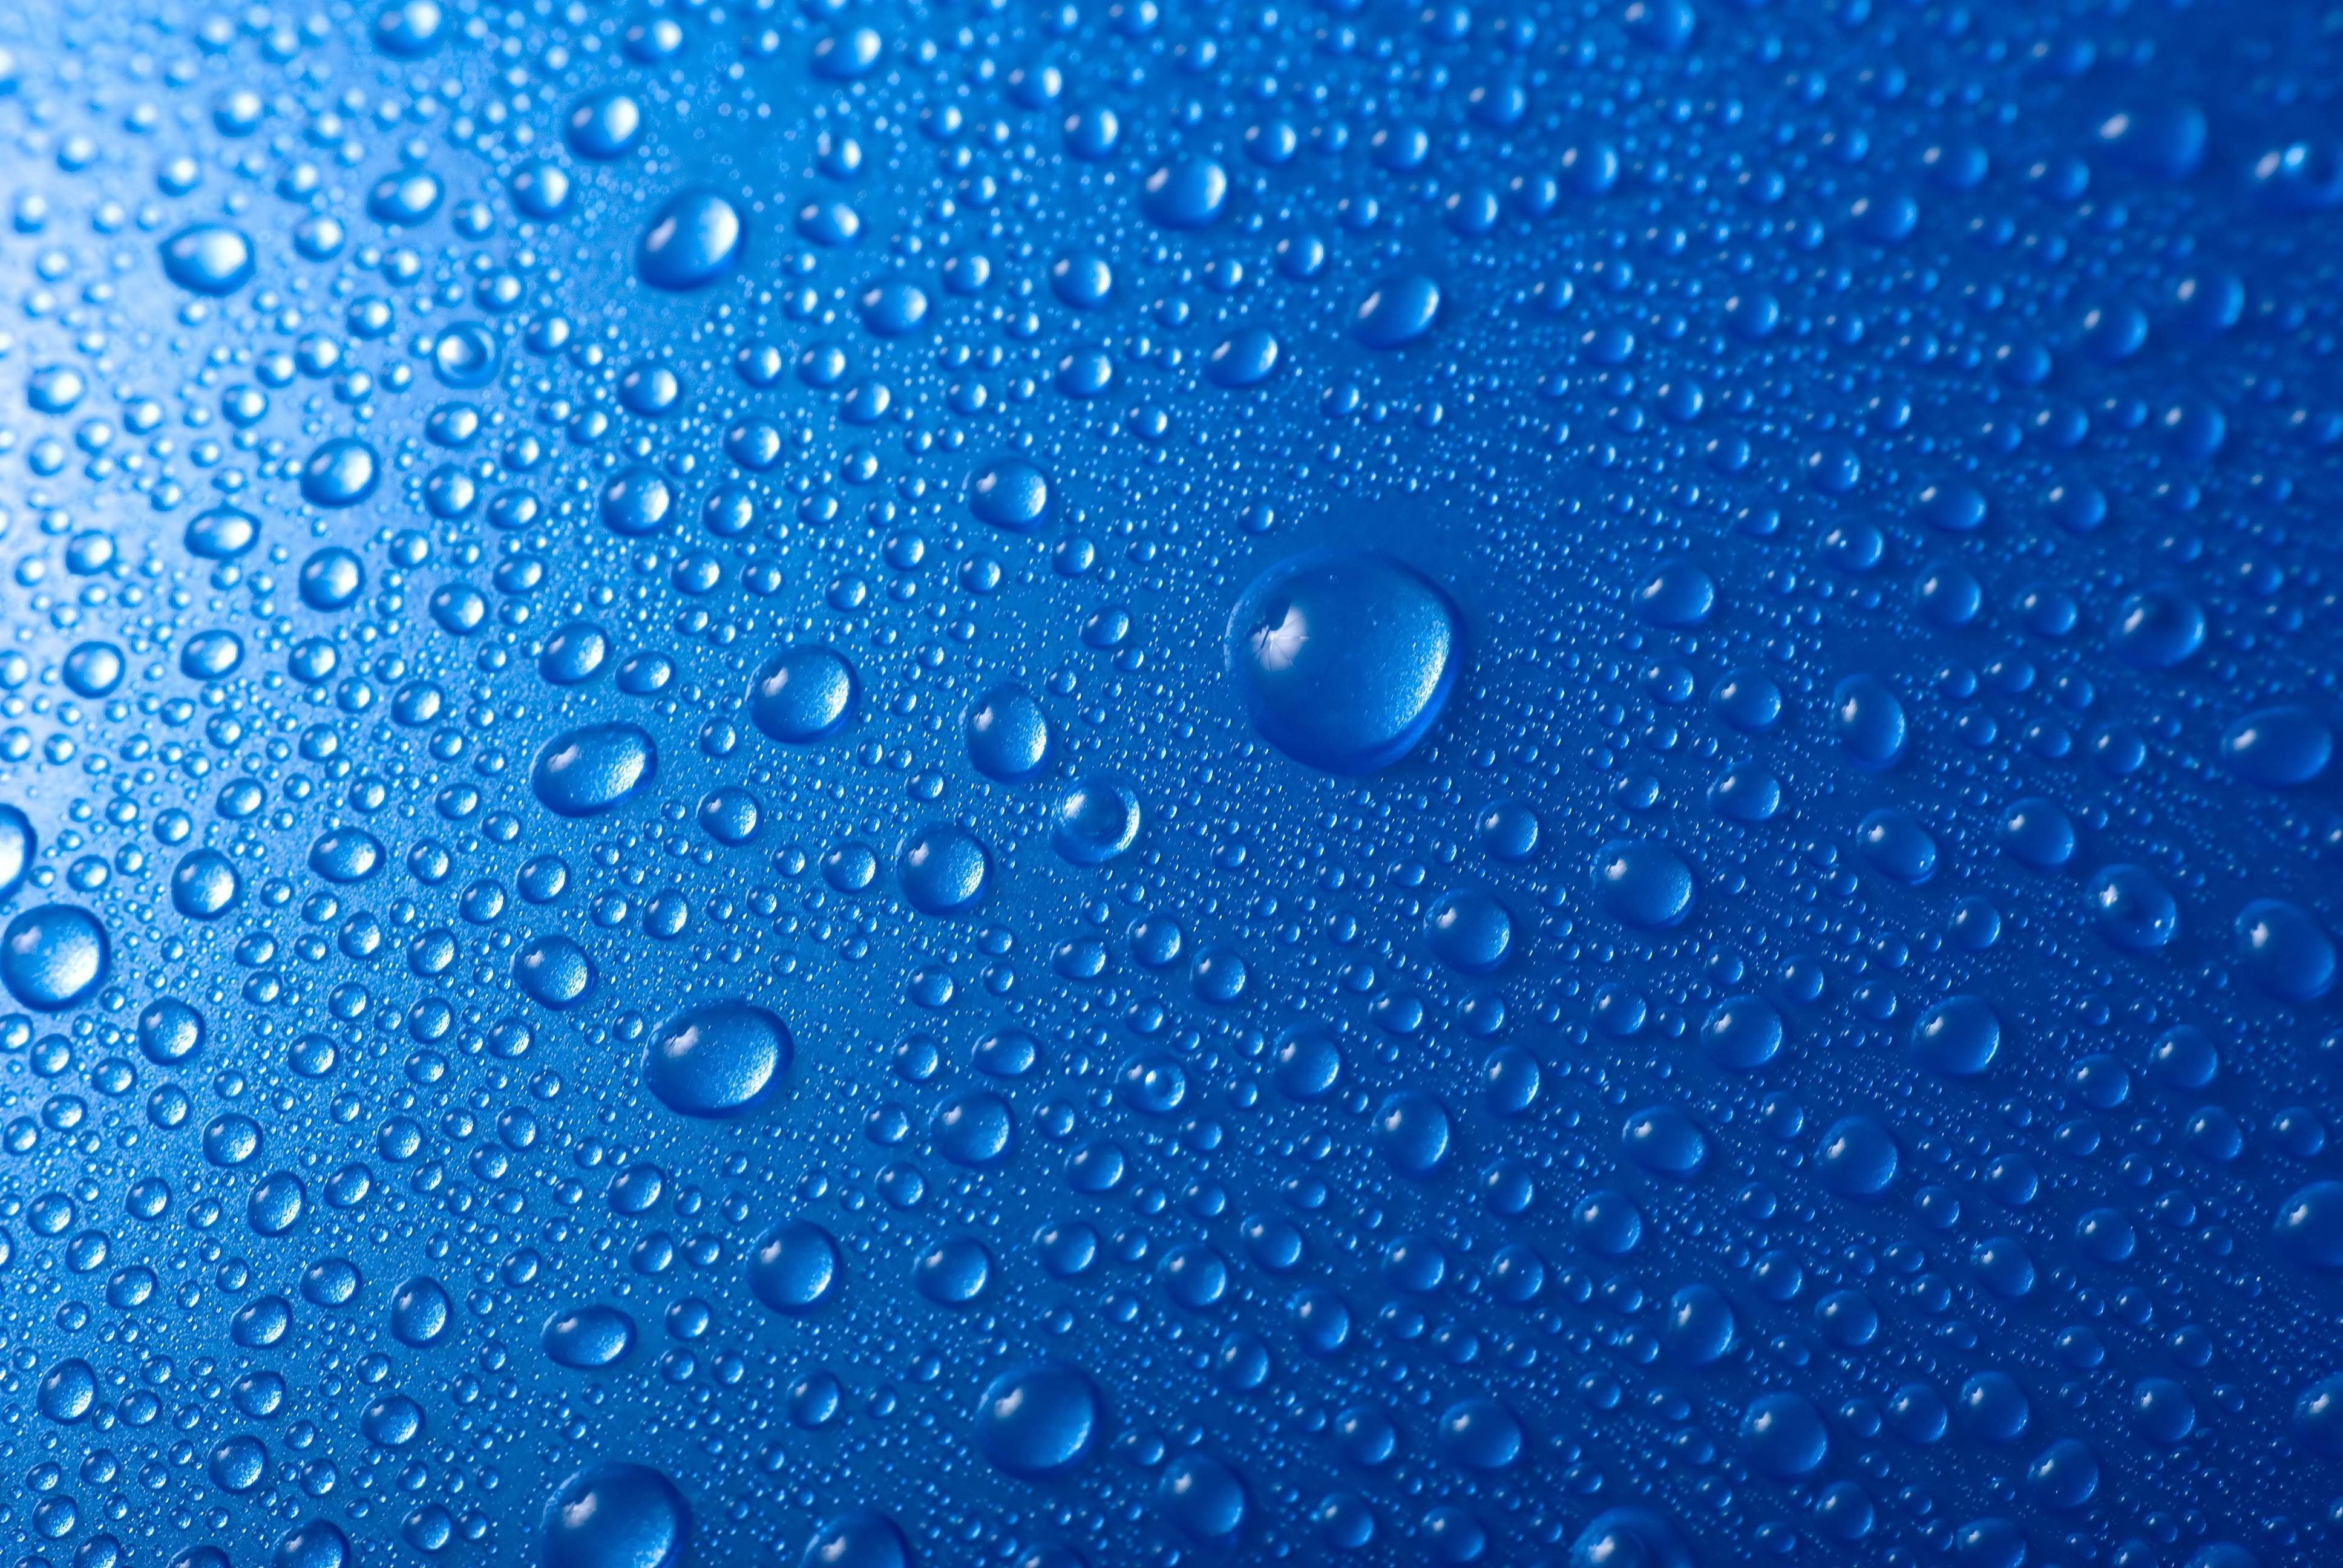 3 gocce d'acqua fresca hd wallpaper,blu,acqua,far cadere,blu elettrico,cielo